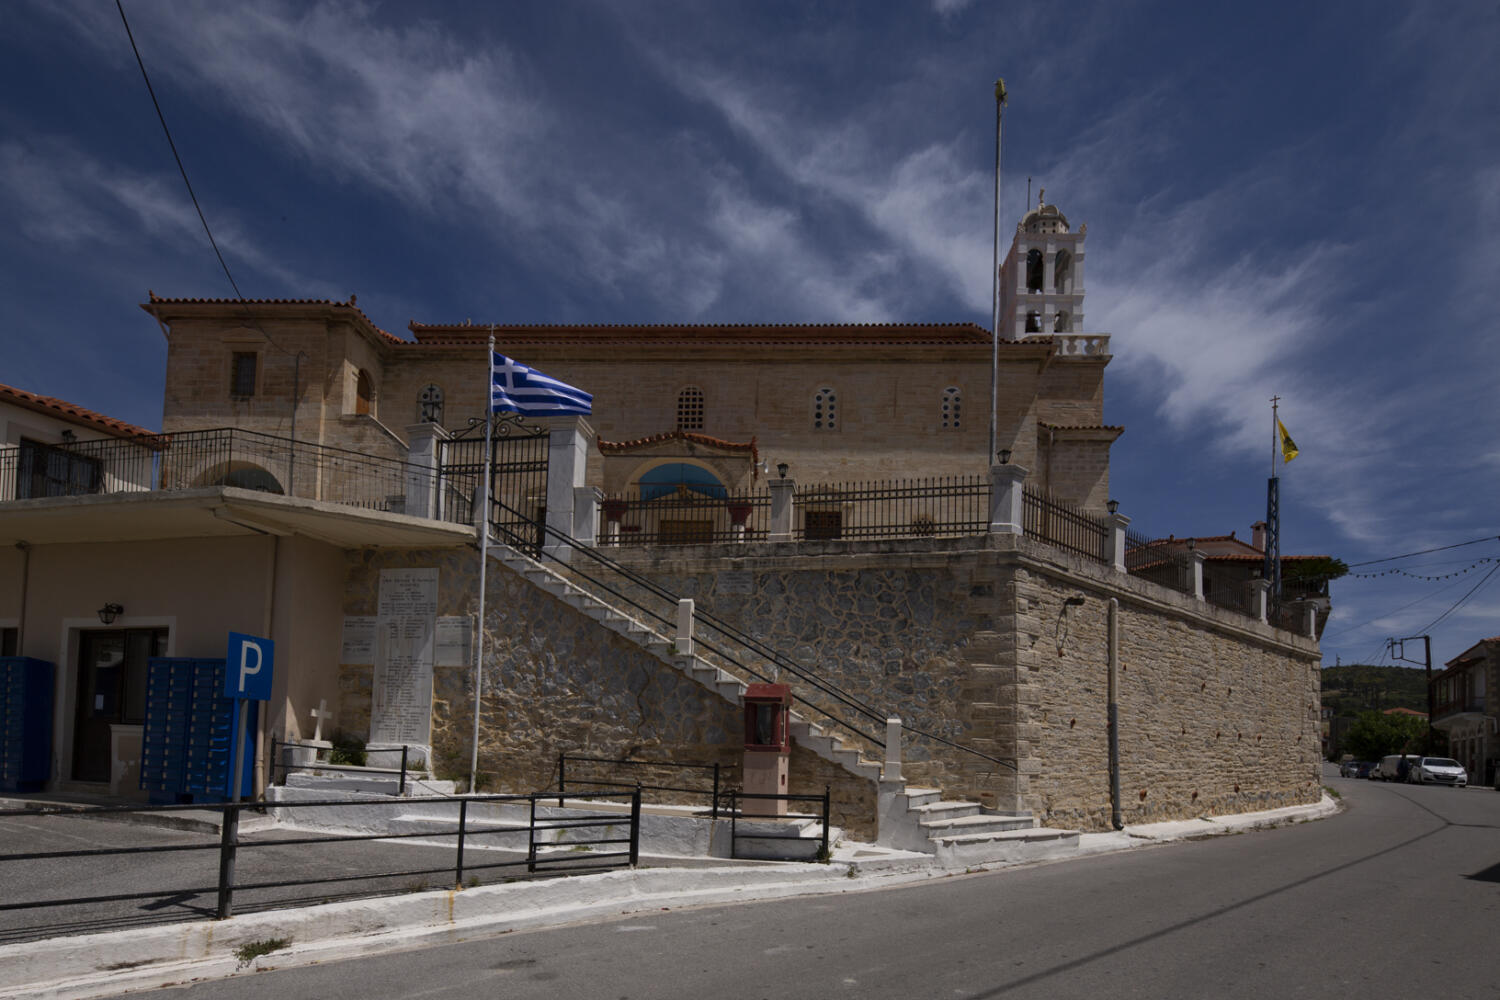 Εκκλησία Ευαγγελίστριας, χωριό Καλημεριάνοι. Φωτογραφία: ©Βασίλης Συκάς, για τον Δήμο Κύμης-Αλιβερίου